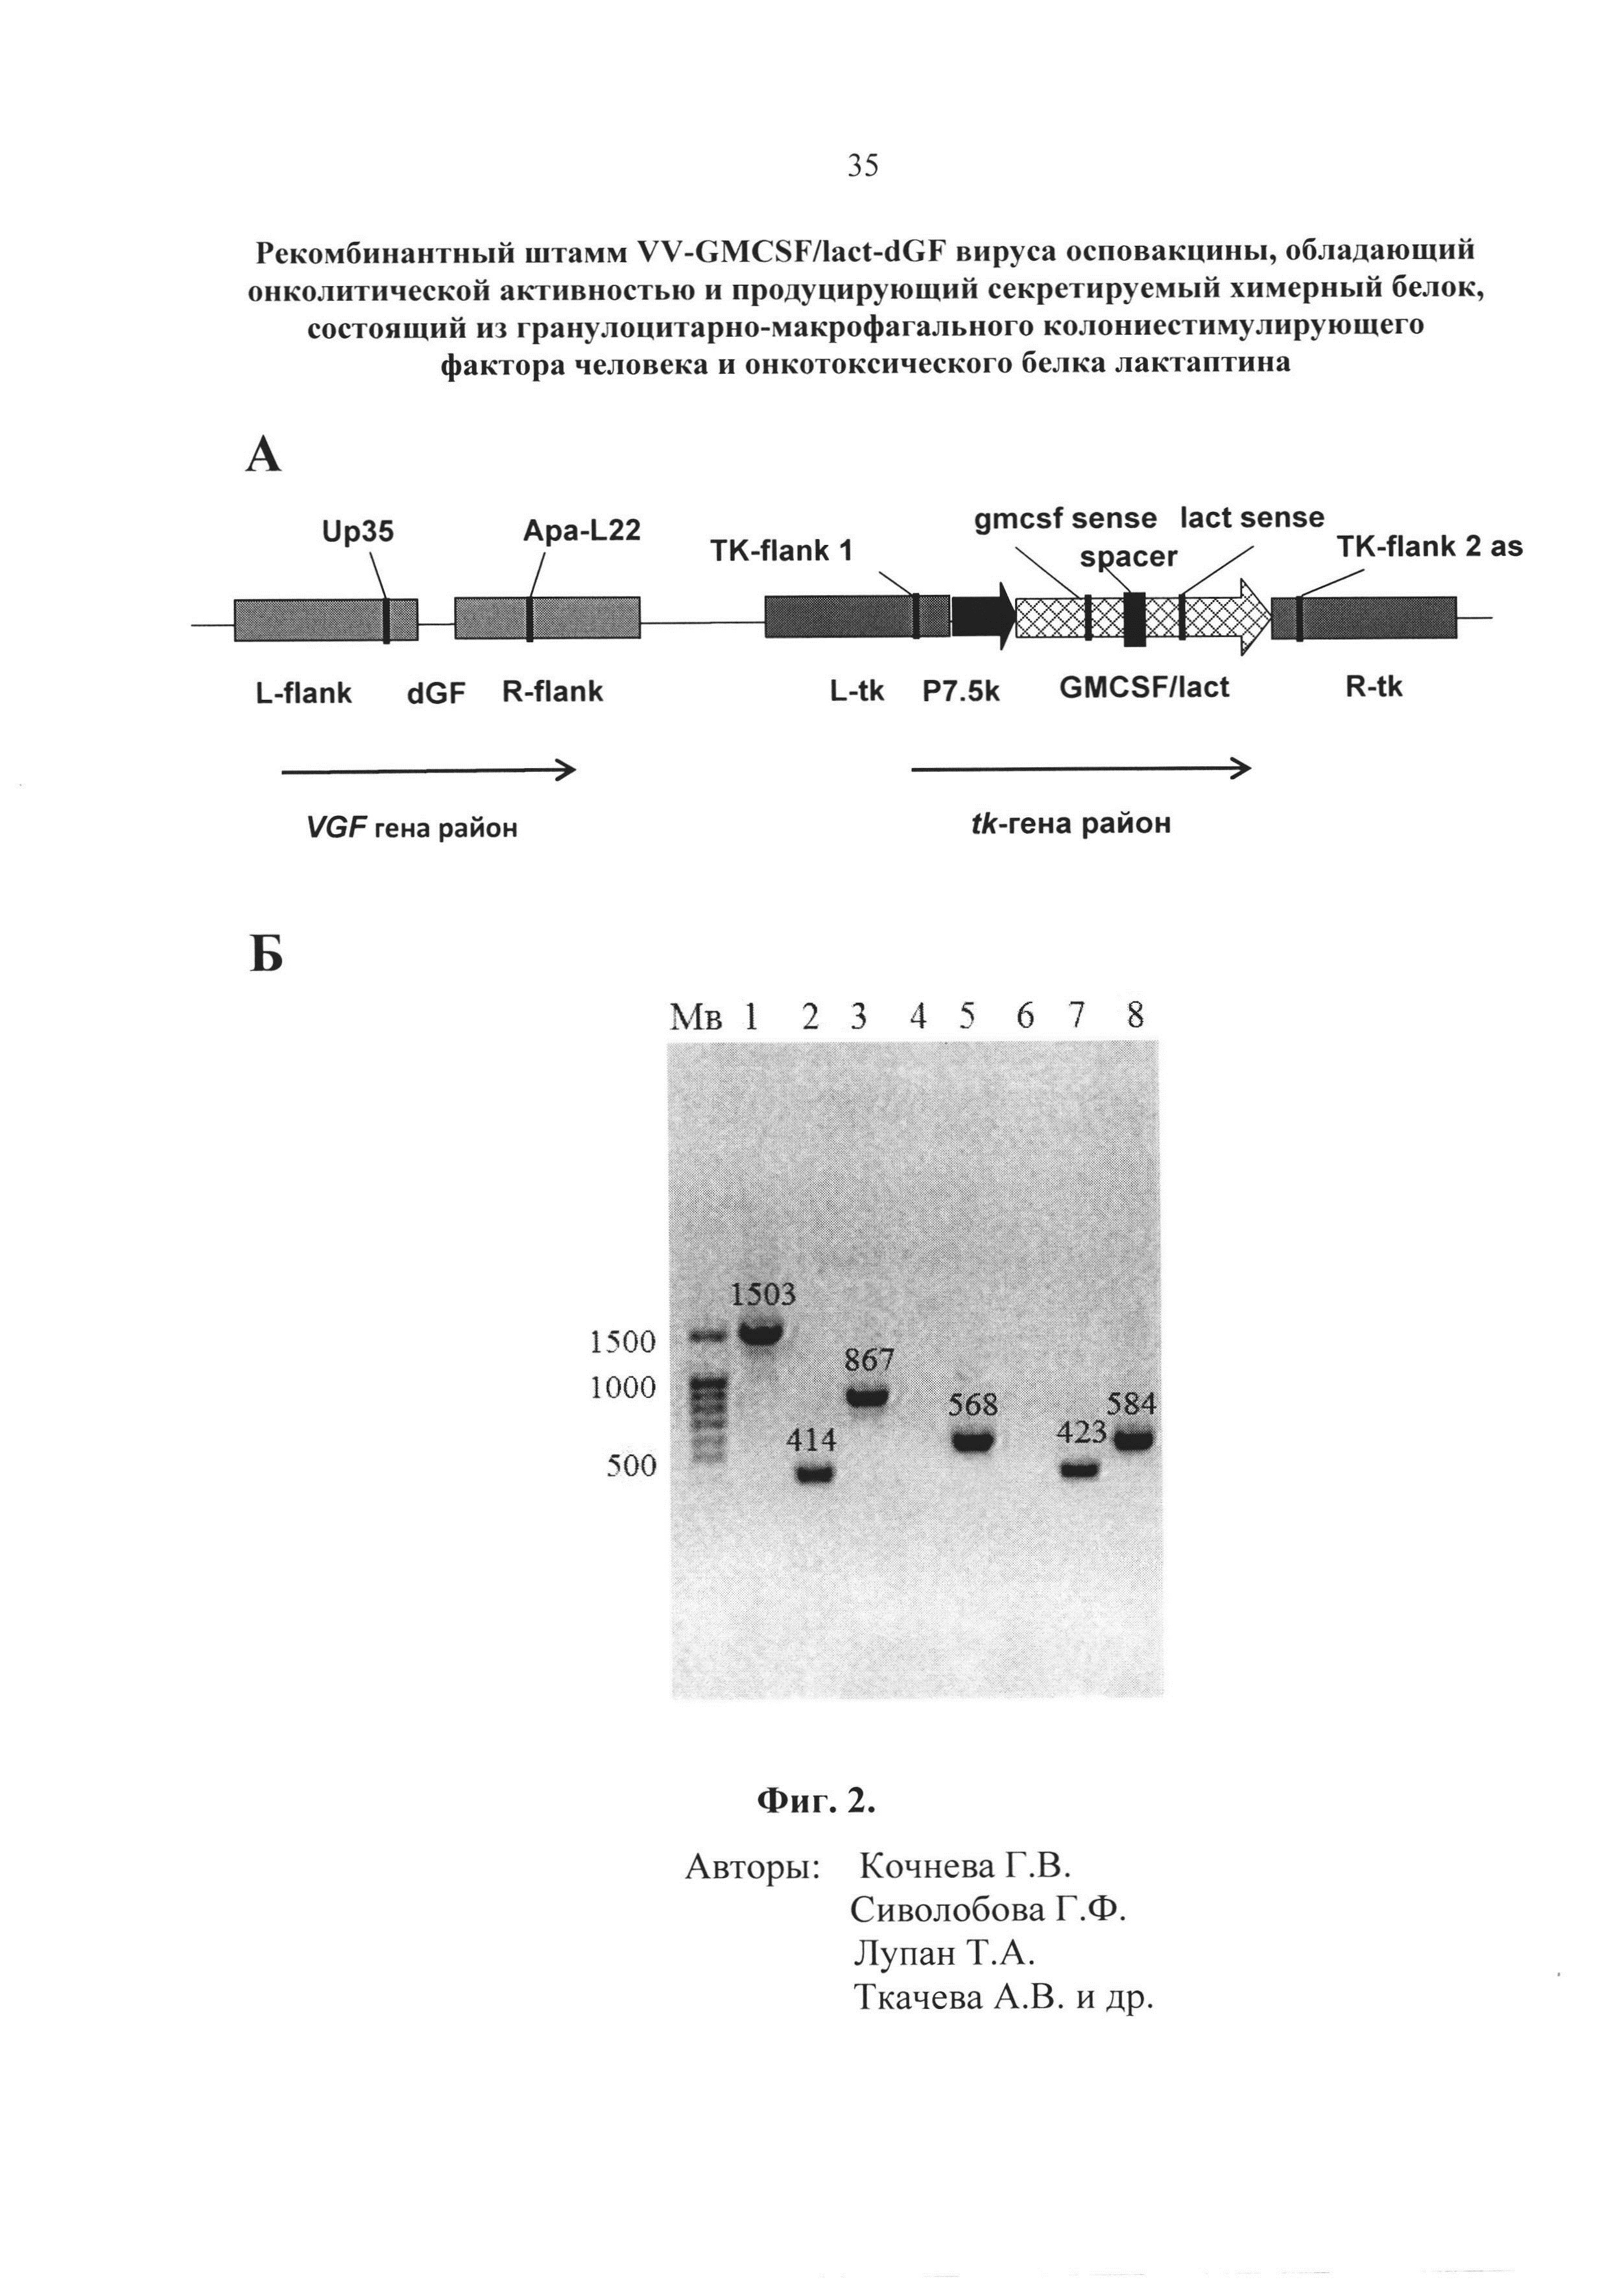 Рекомбинантный штамм VV-GMCSF/lact-dGF вируса осповакцины, обладающий онколитической активностью и продуцирующий секретируемый химерный белок, состоящий из гранулоцитарно-макрофагального колониестимулирующего фактора человека и онкотоксического белка лактаптина